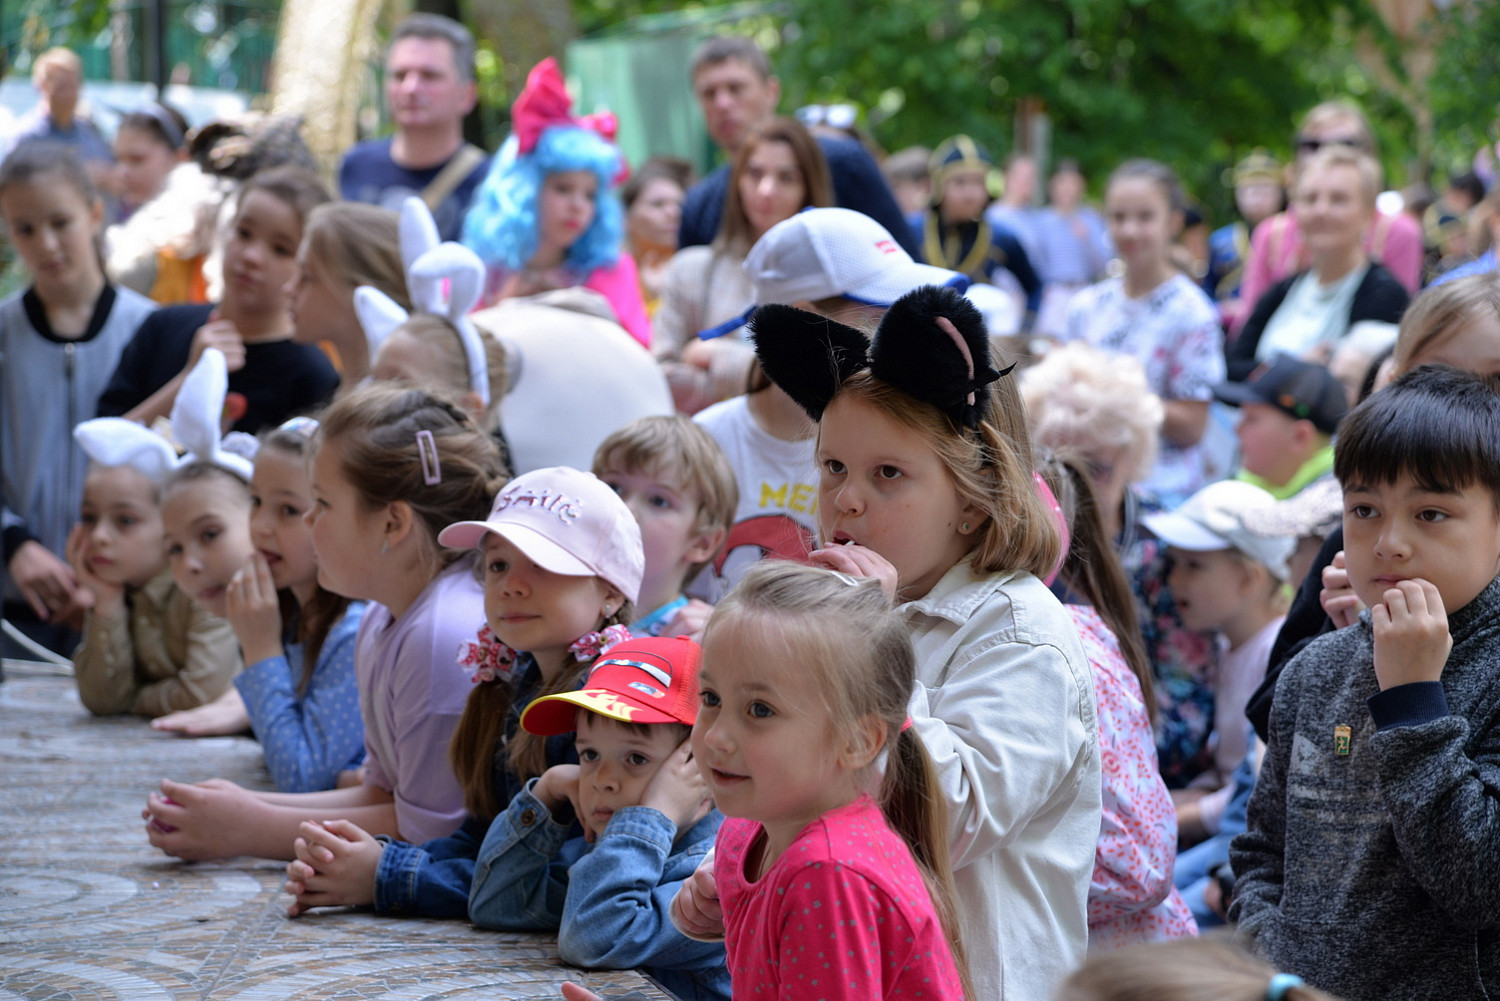 2,5 тысячи стаканчиков мороженого от команды губернатора бесплатно раздали детям в Центральном парке Видного 1 июня